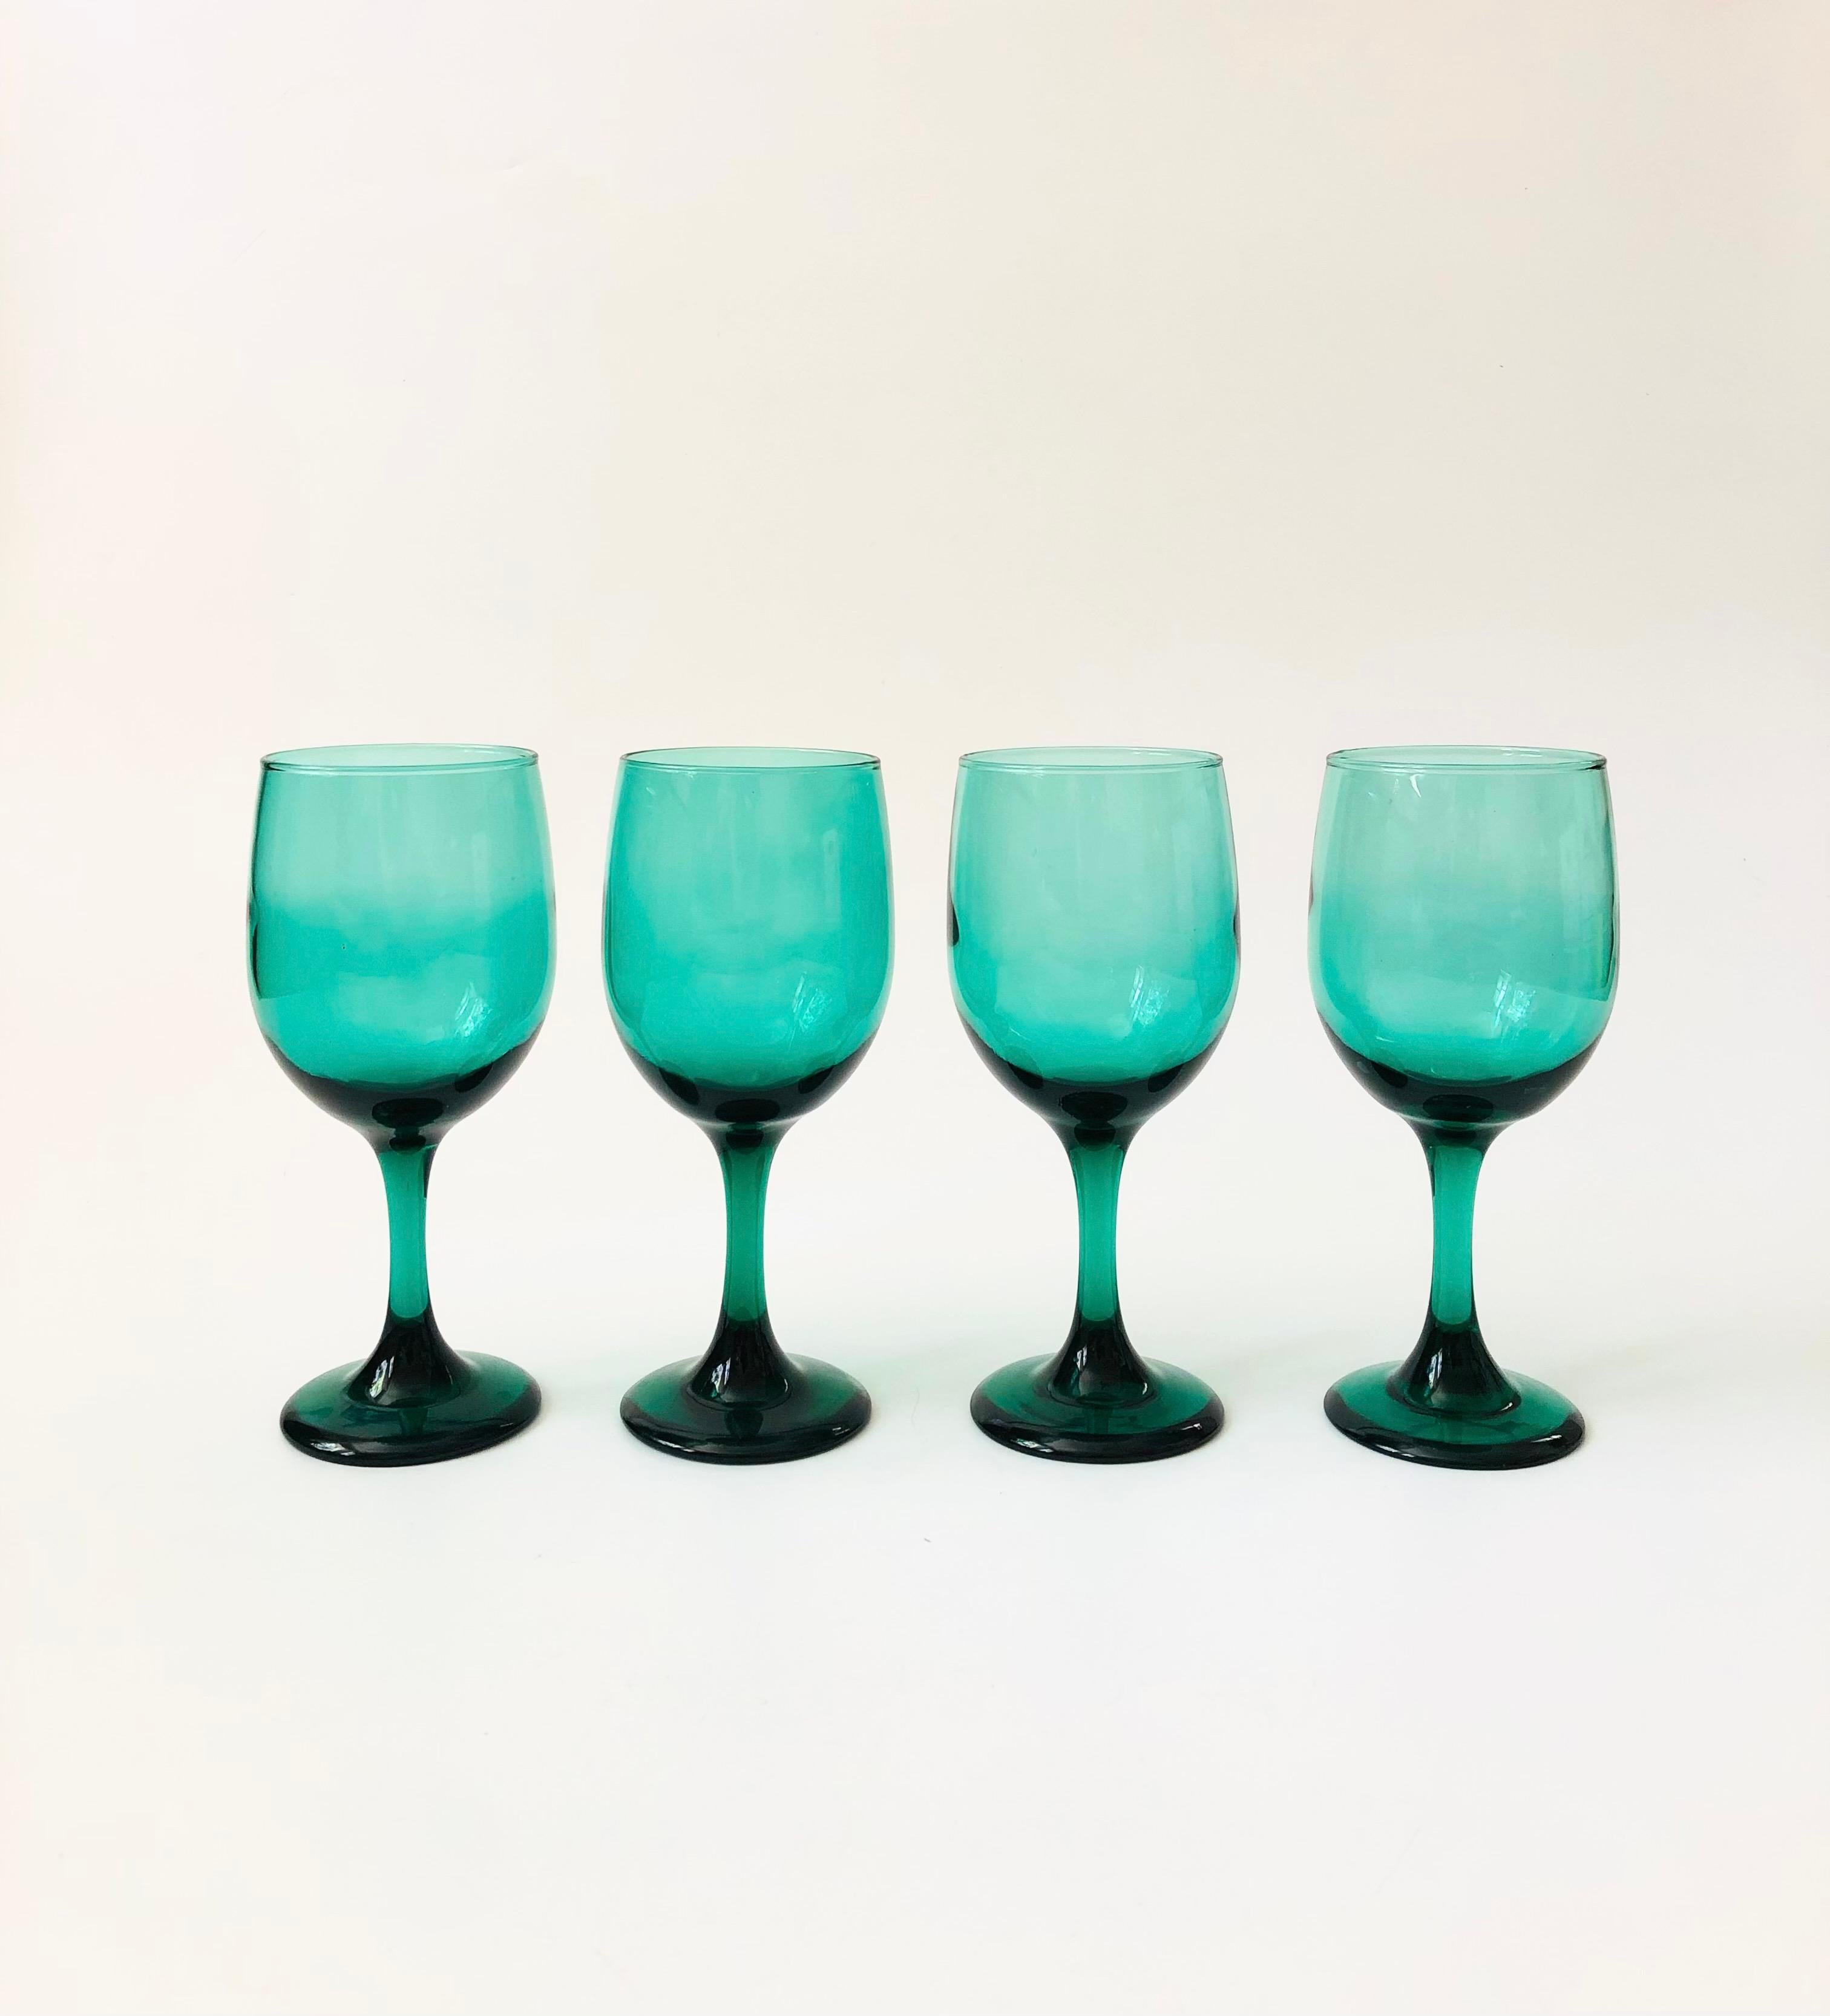 Un ensemble de 4 verres à vin vintage. Magnifique couleur vert émeraude sombre dans une forme élégante et effilée. 